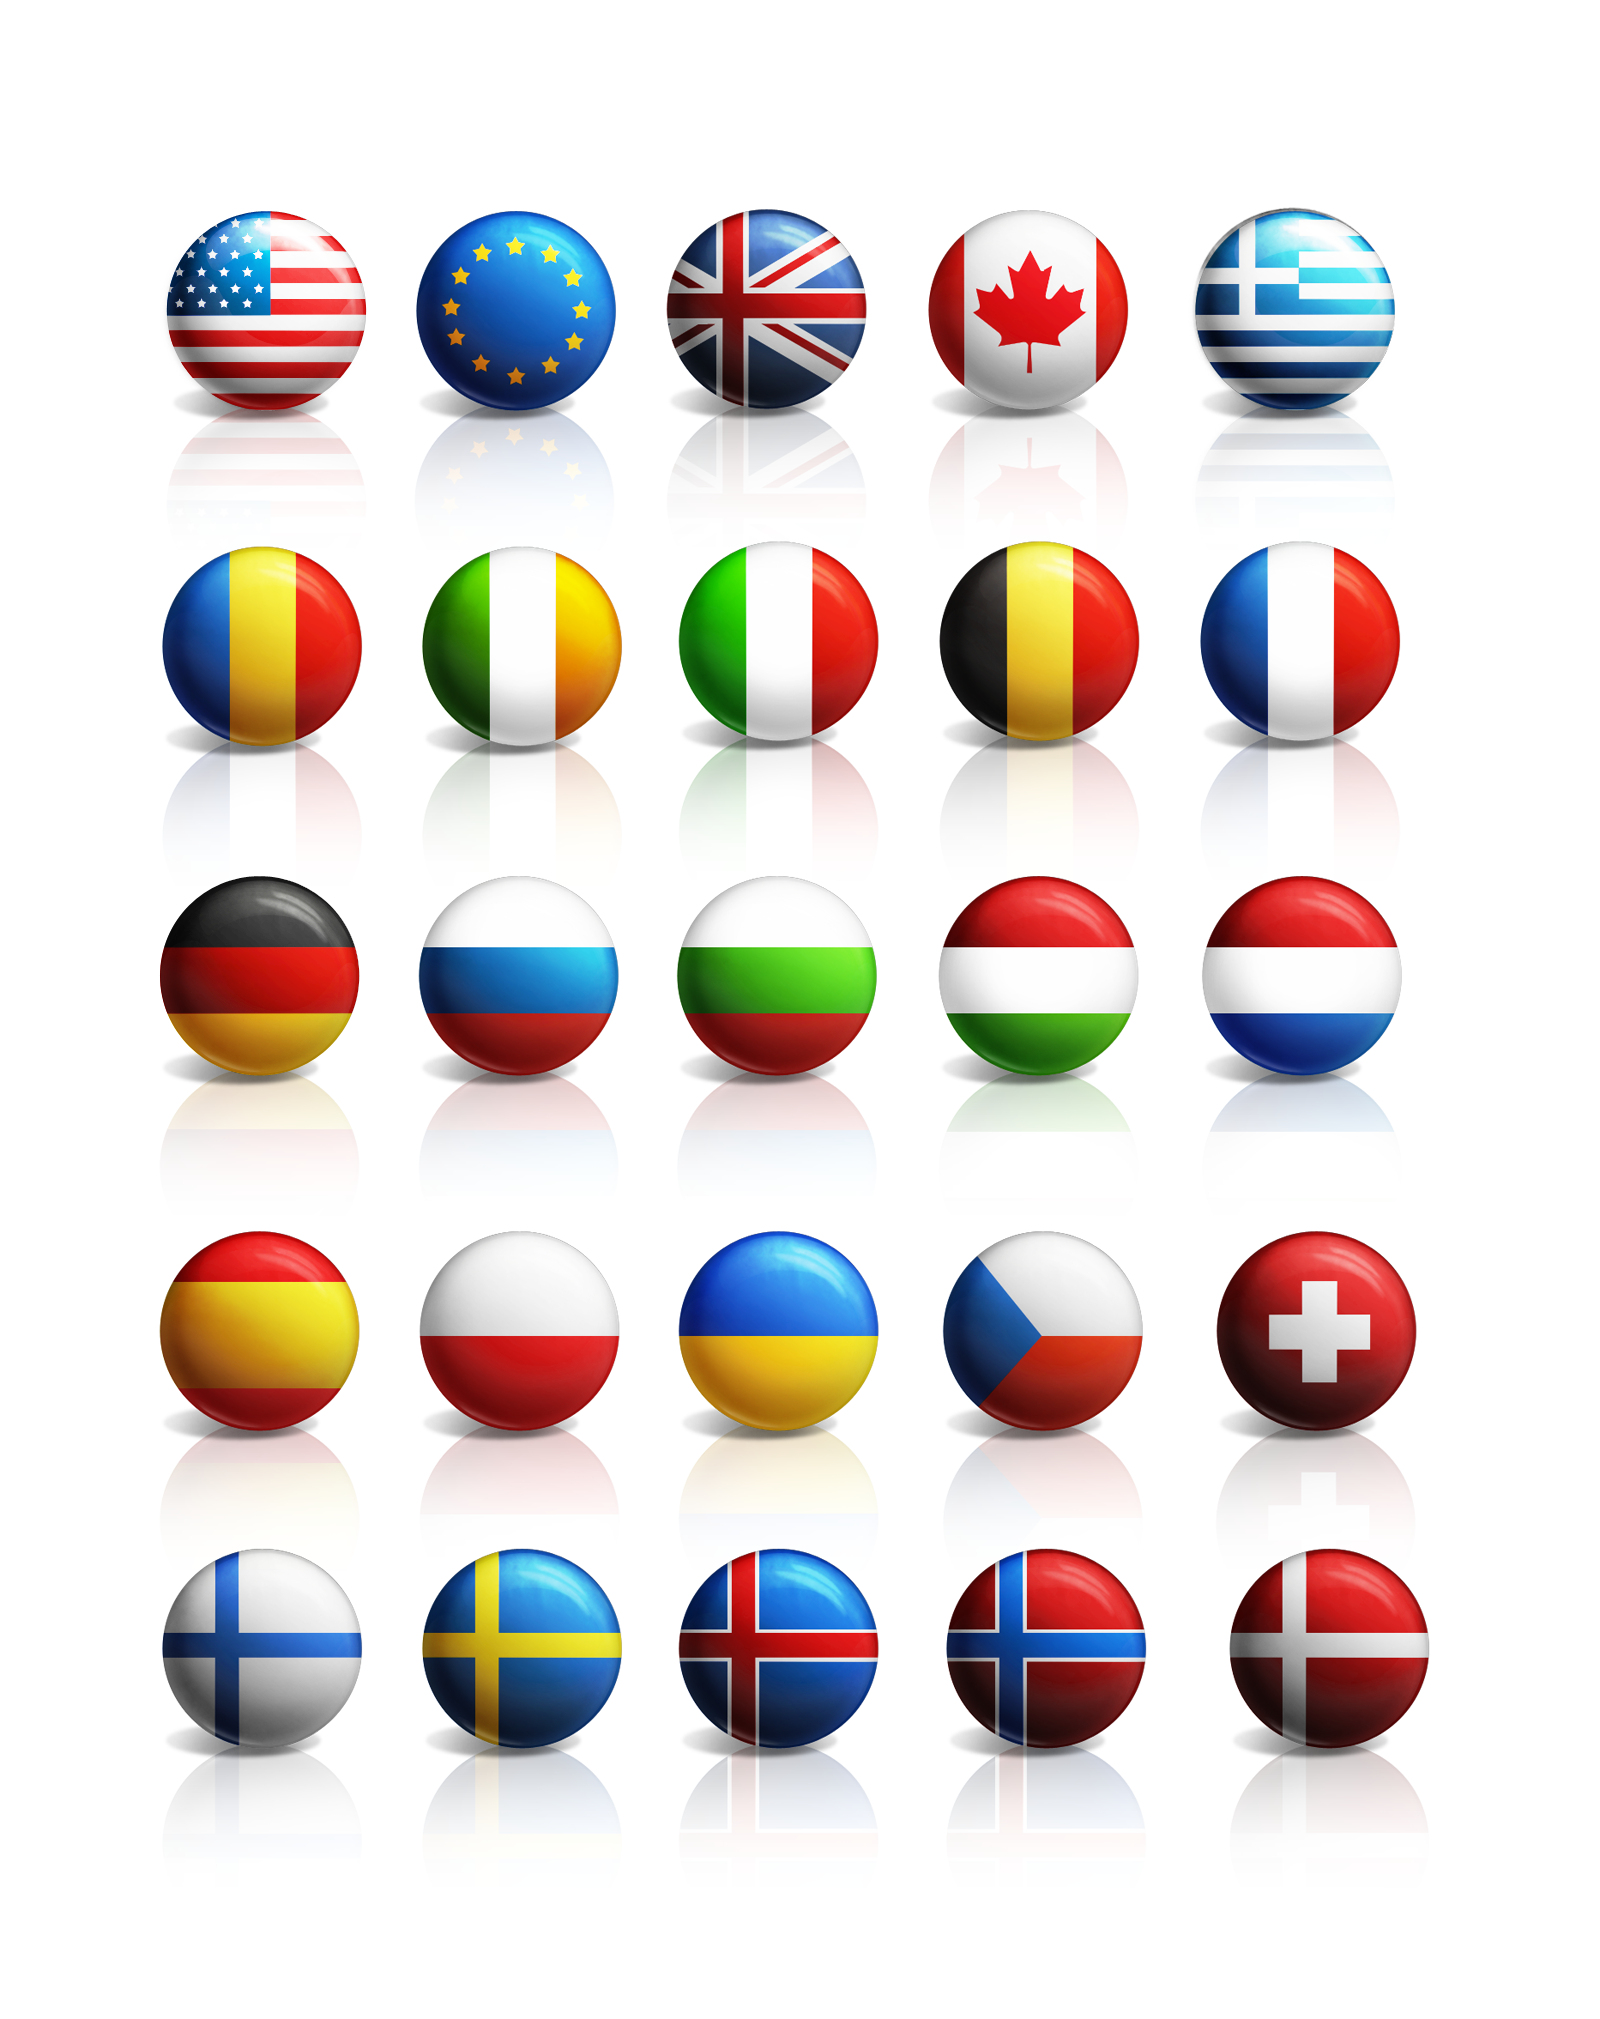 欧洲各国国旗大全3D模型,MAX,MB,SKP,FBX等多种格式_基础设施模型下载-摩尔网CGMOL